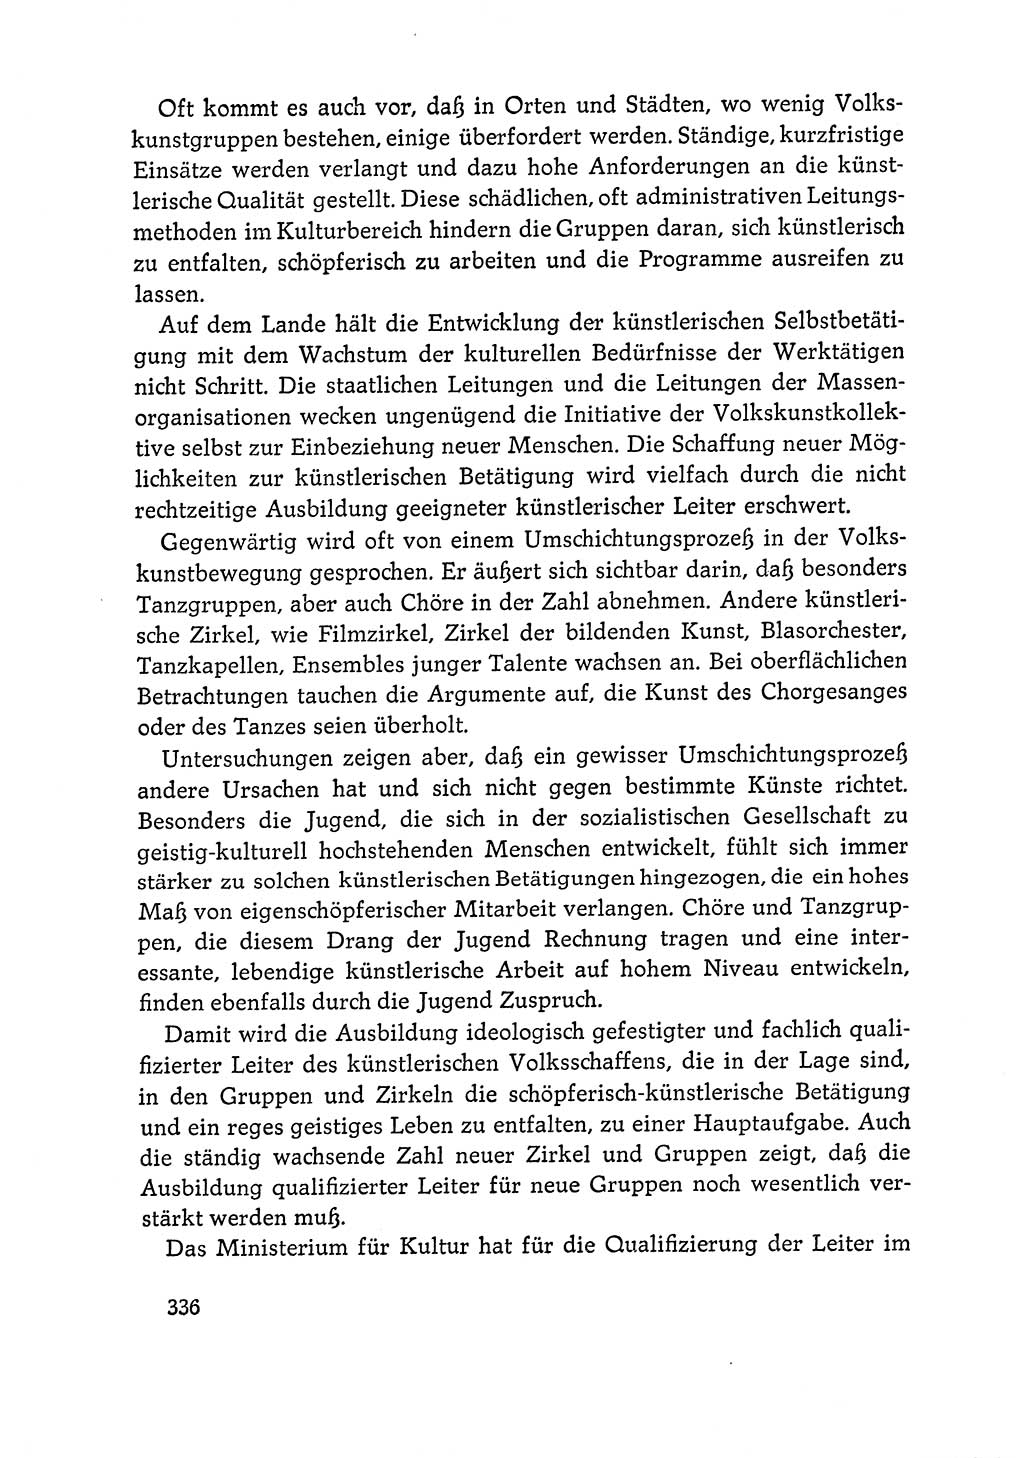 Dokumente der Sozialistischen Einheitspartei Deutschlands (SED) [Deutsche Demokratische Republik (DDR)] 1964-1965, Seite 336 (Dok. SED DDR 1964-1965, S. 336)